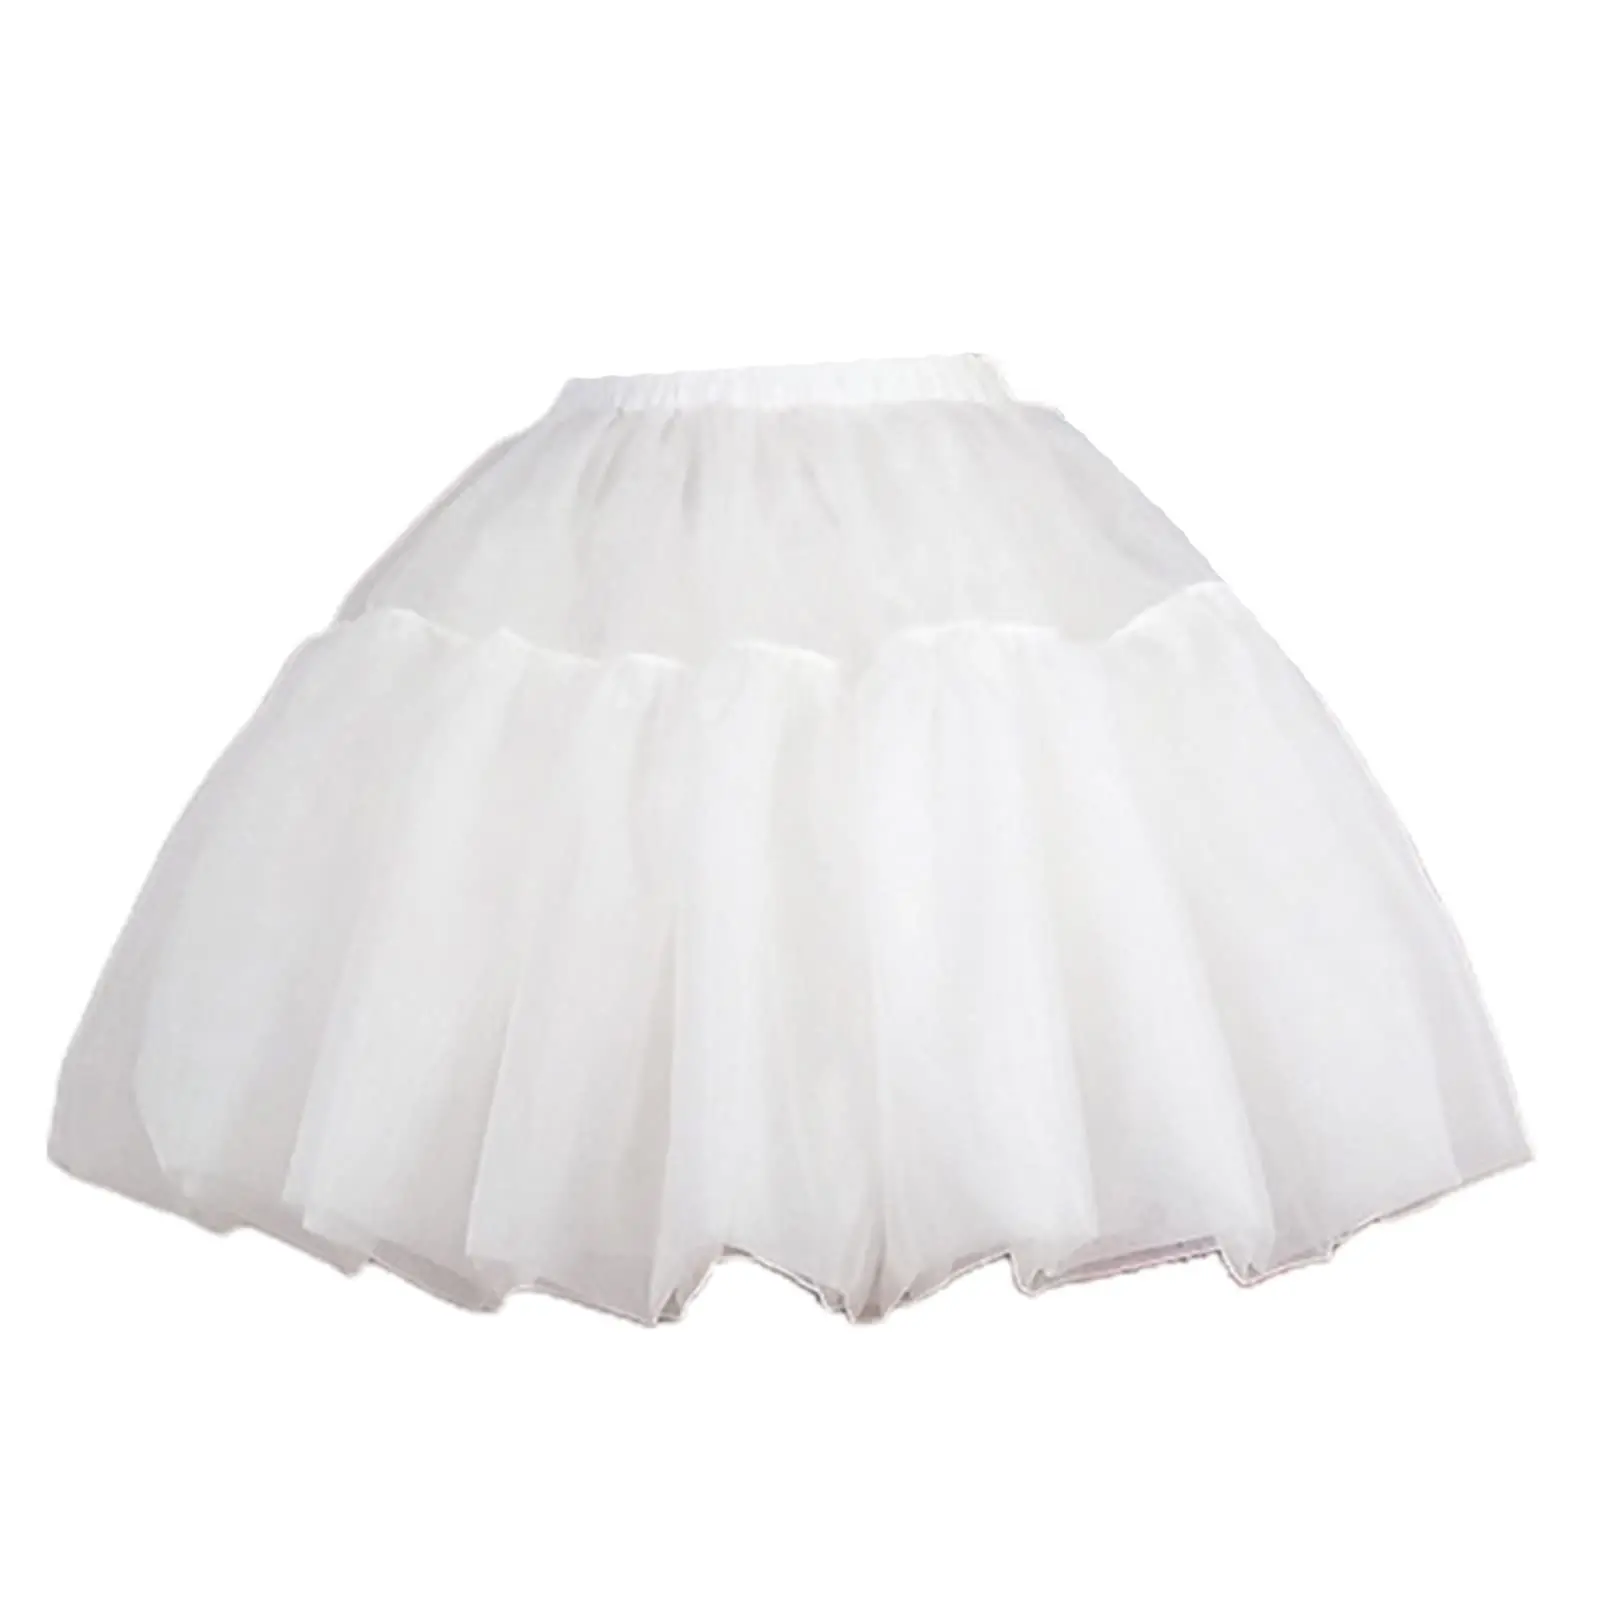 

Women's Crinoline Petticoat Tutu Skirt Ball Gown Short Half Slips Multiple Layers Underskirt for Wedding Bridal Dress